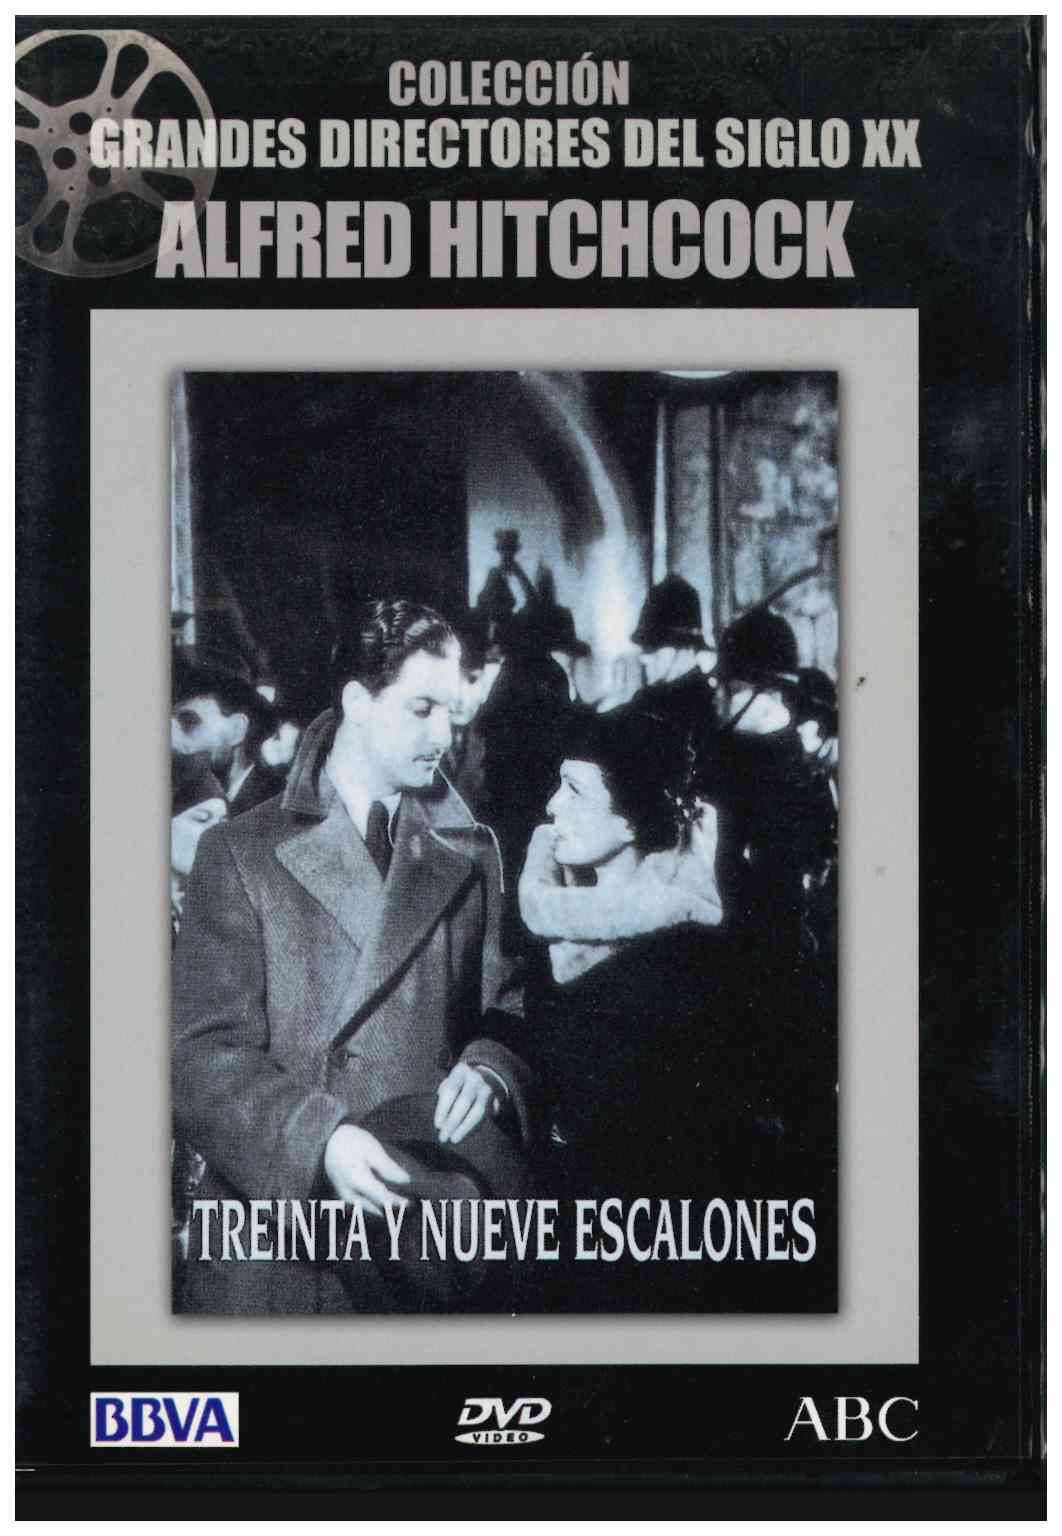 Colección grandes directores del siglo XX. Alfred Hitchcock. Treinta y nueve escalones